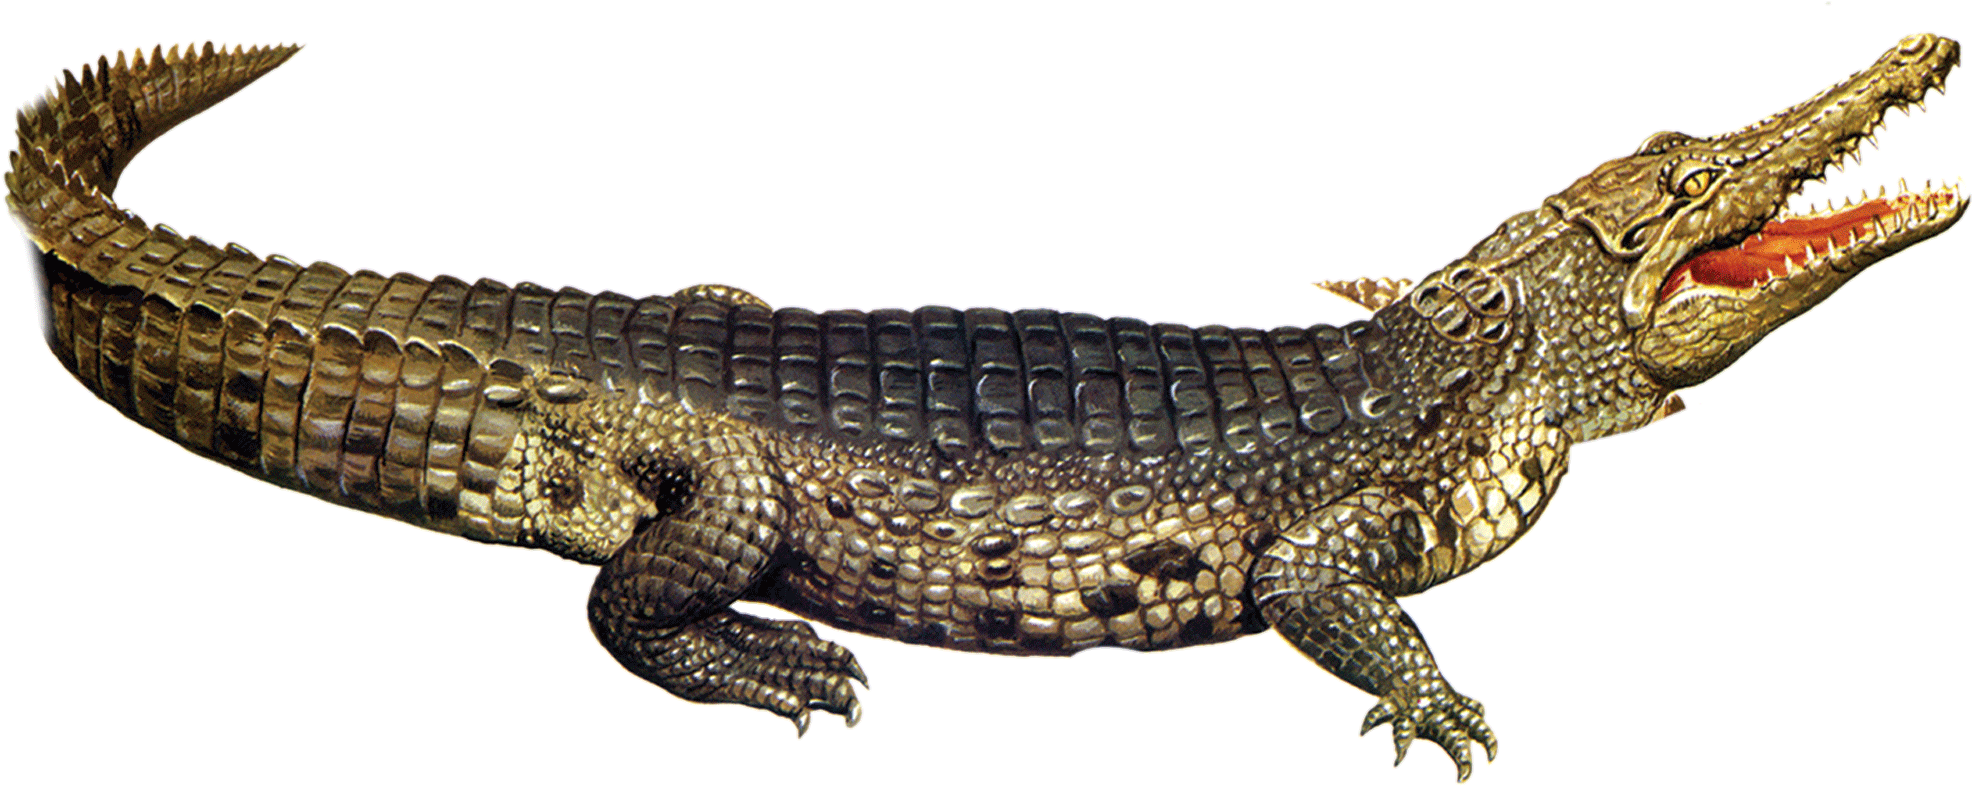 Crocodile-20